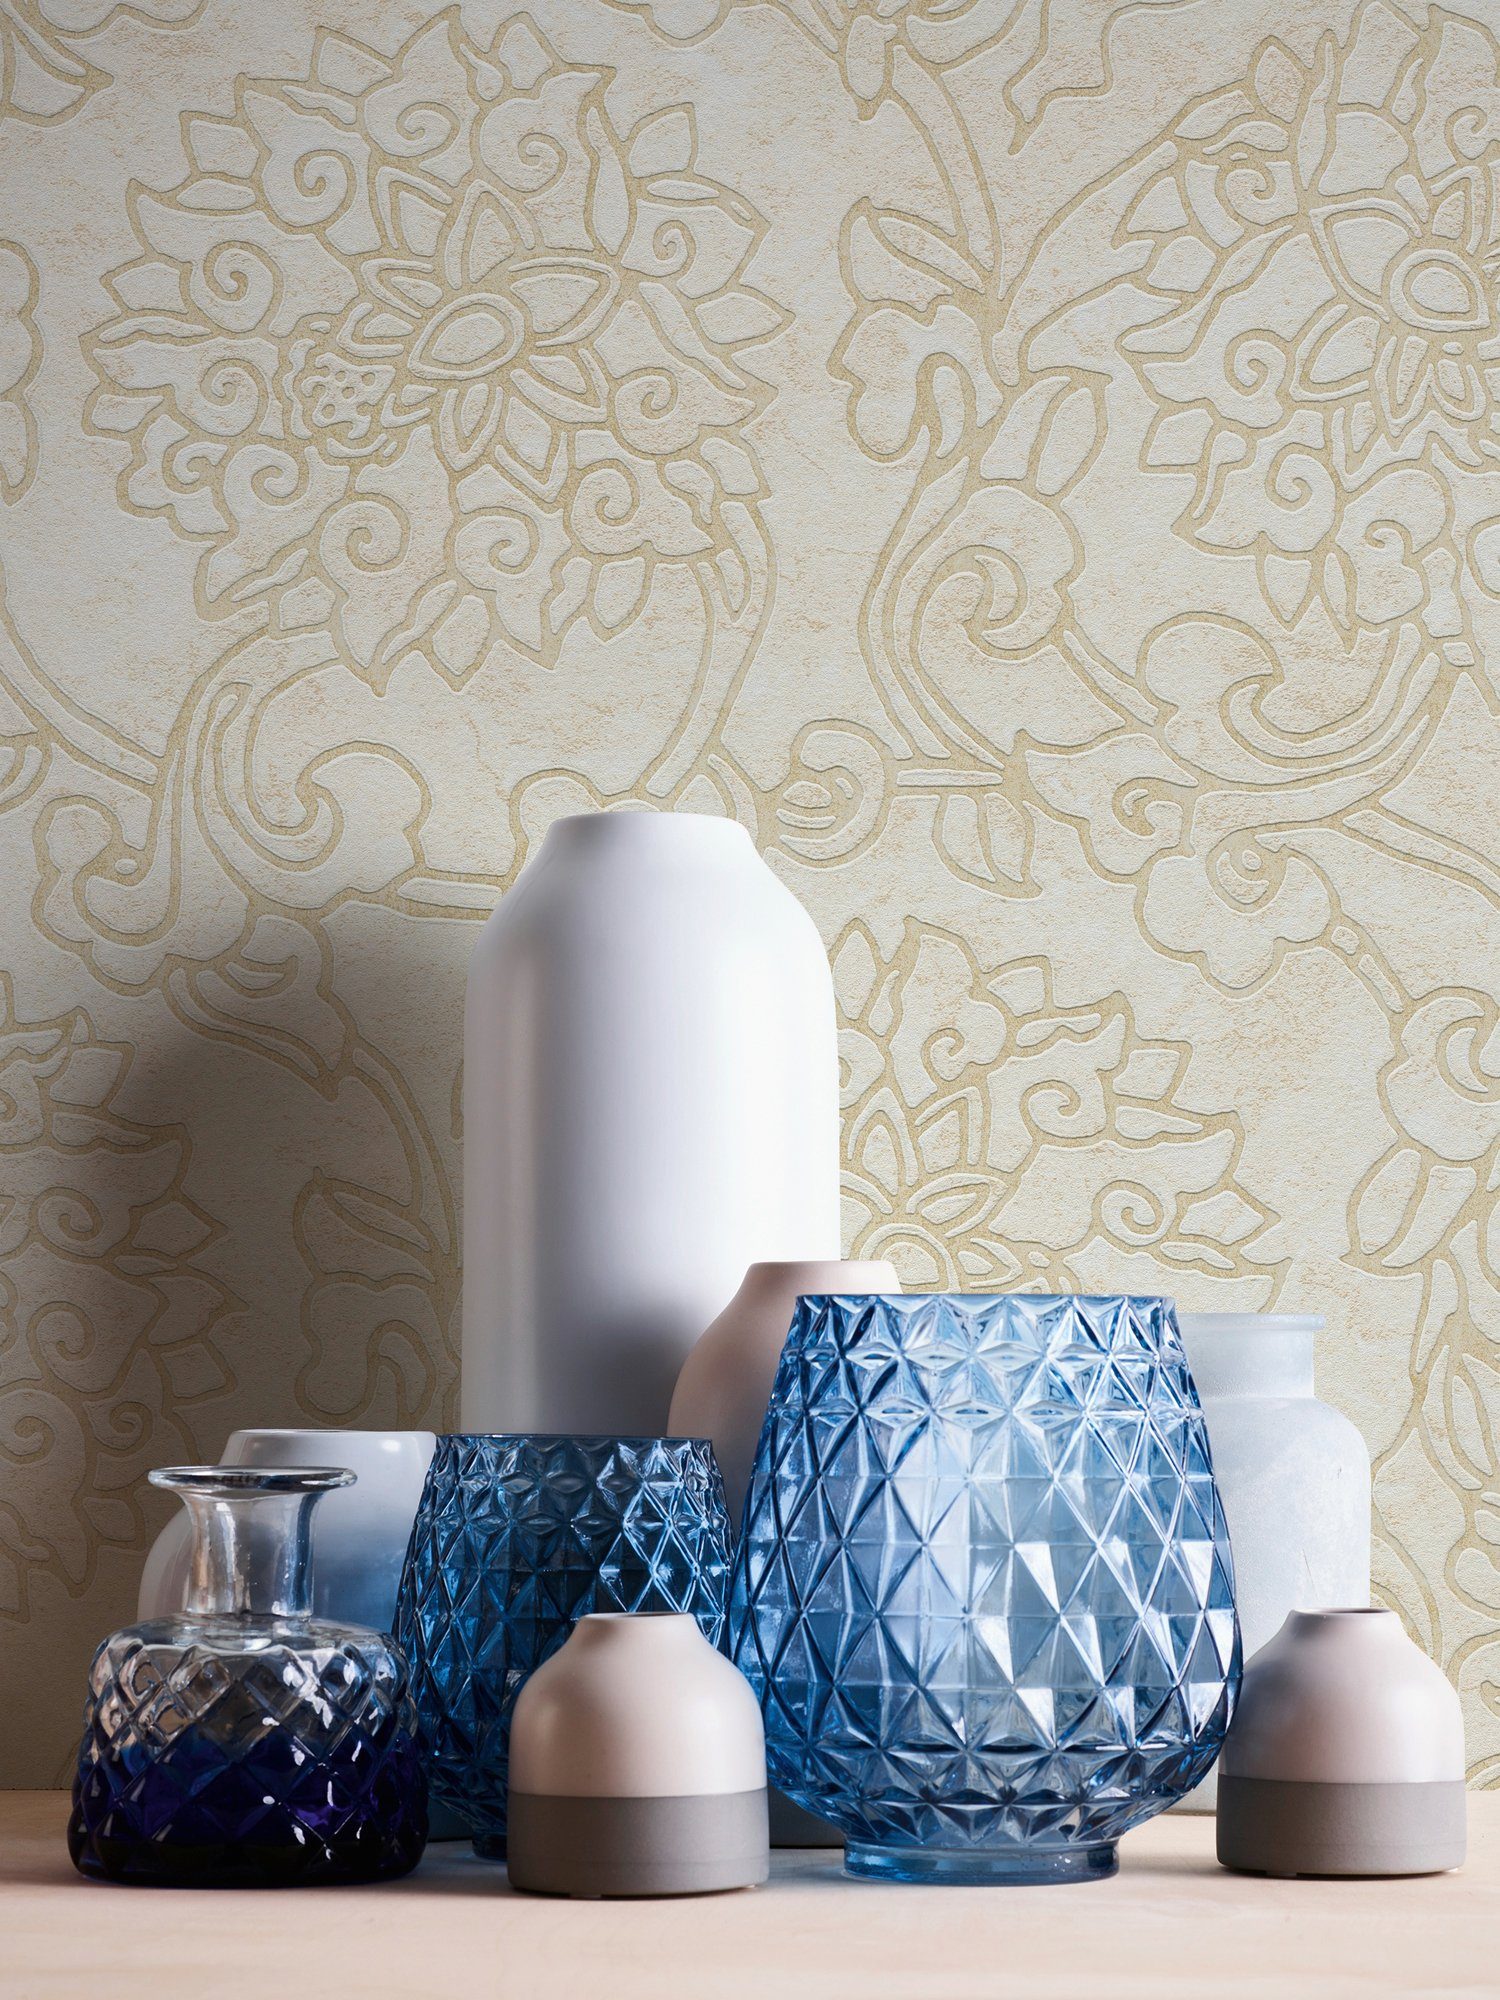 A.S. Création Vliestapete Asian ornamental, gemustert, aufgeschäumt, Japanisch Ornament Fusion, Tapete creme/gold